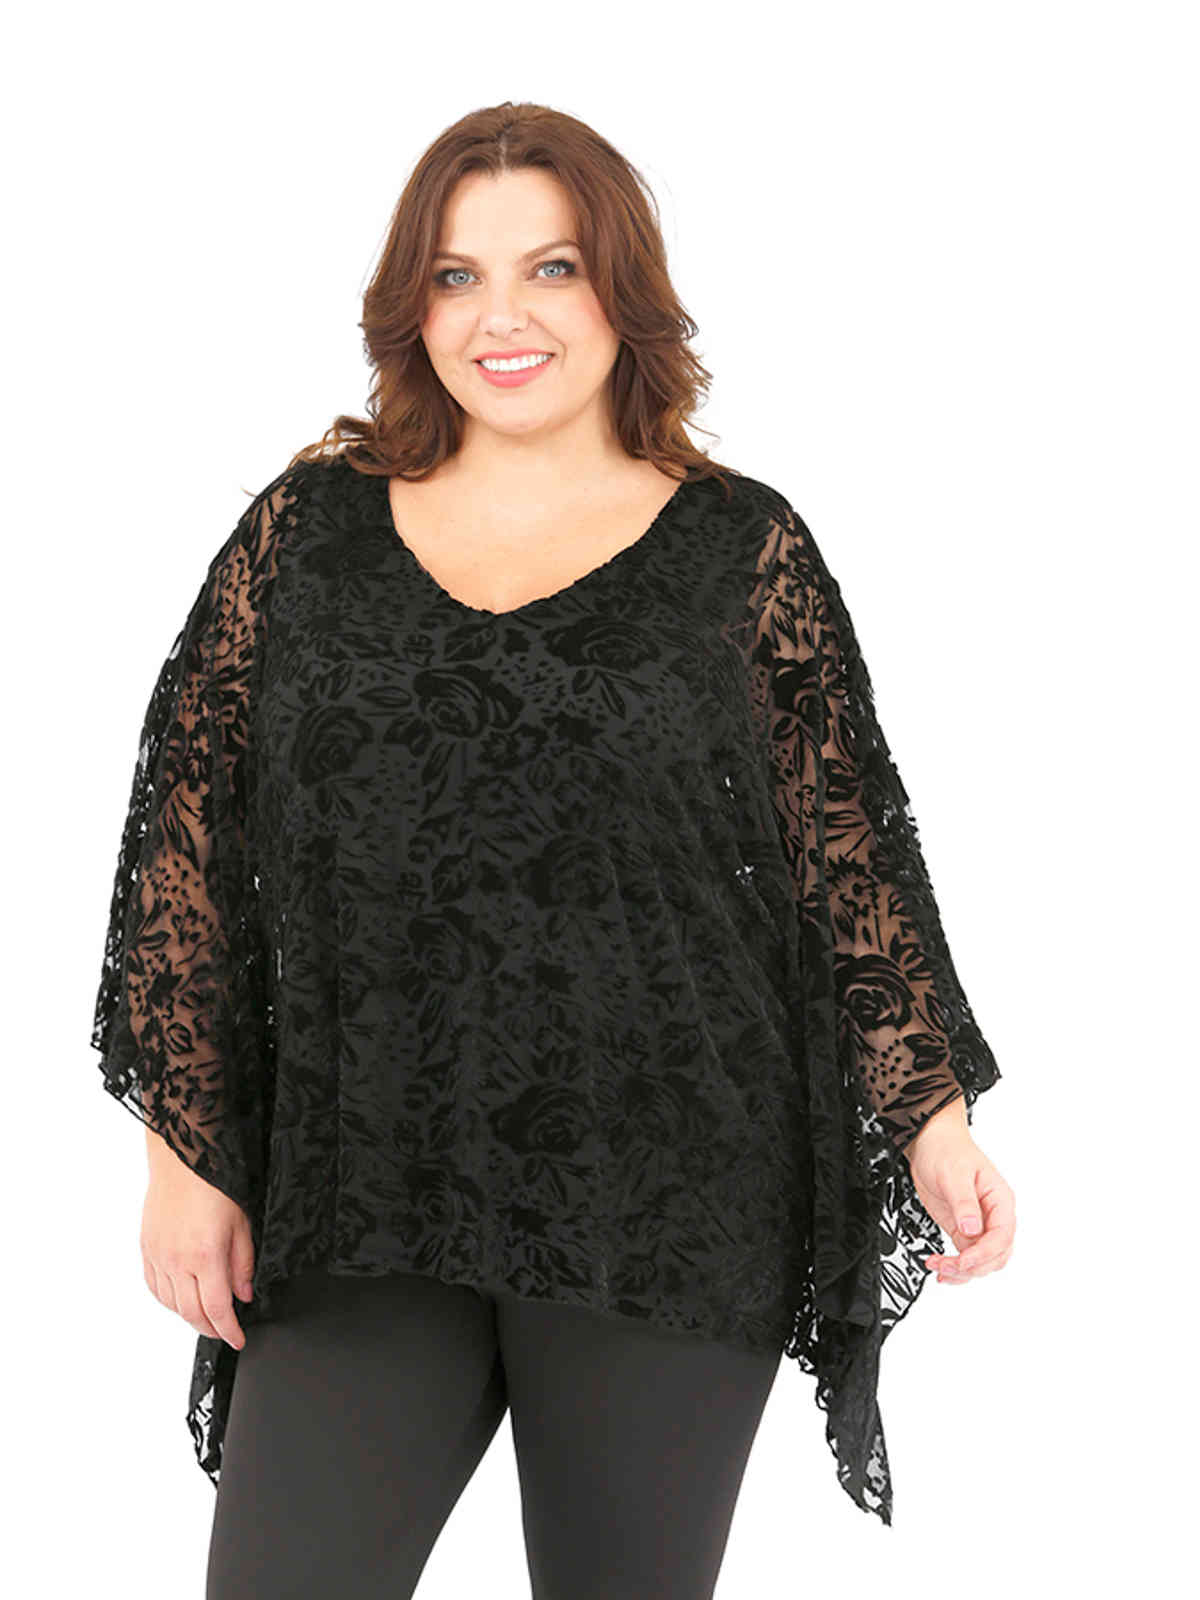 Ladies blouse top cape poncho plus size 16/18 curve black devore velvet ...